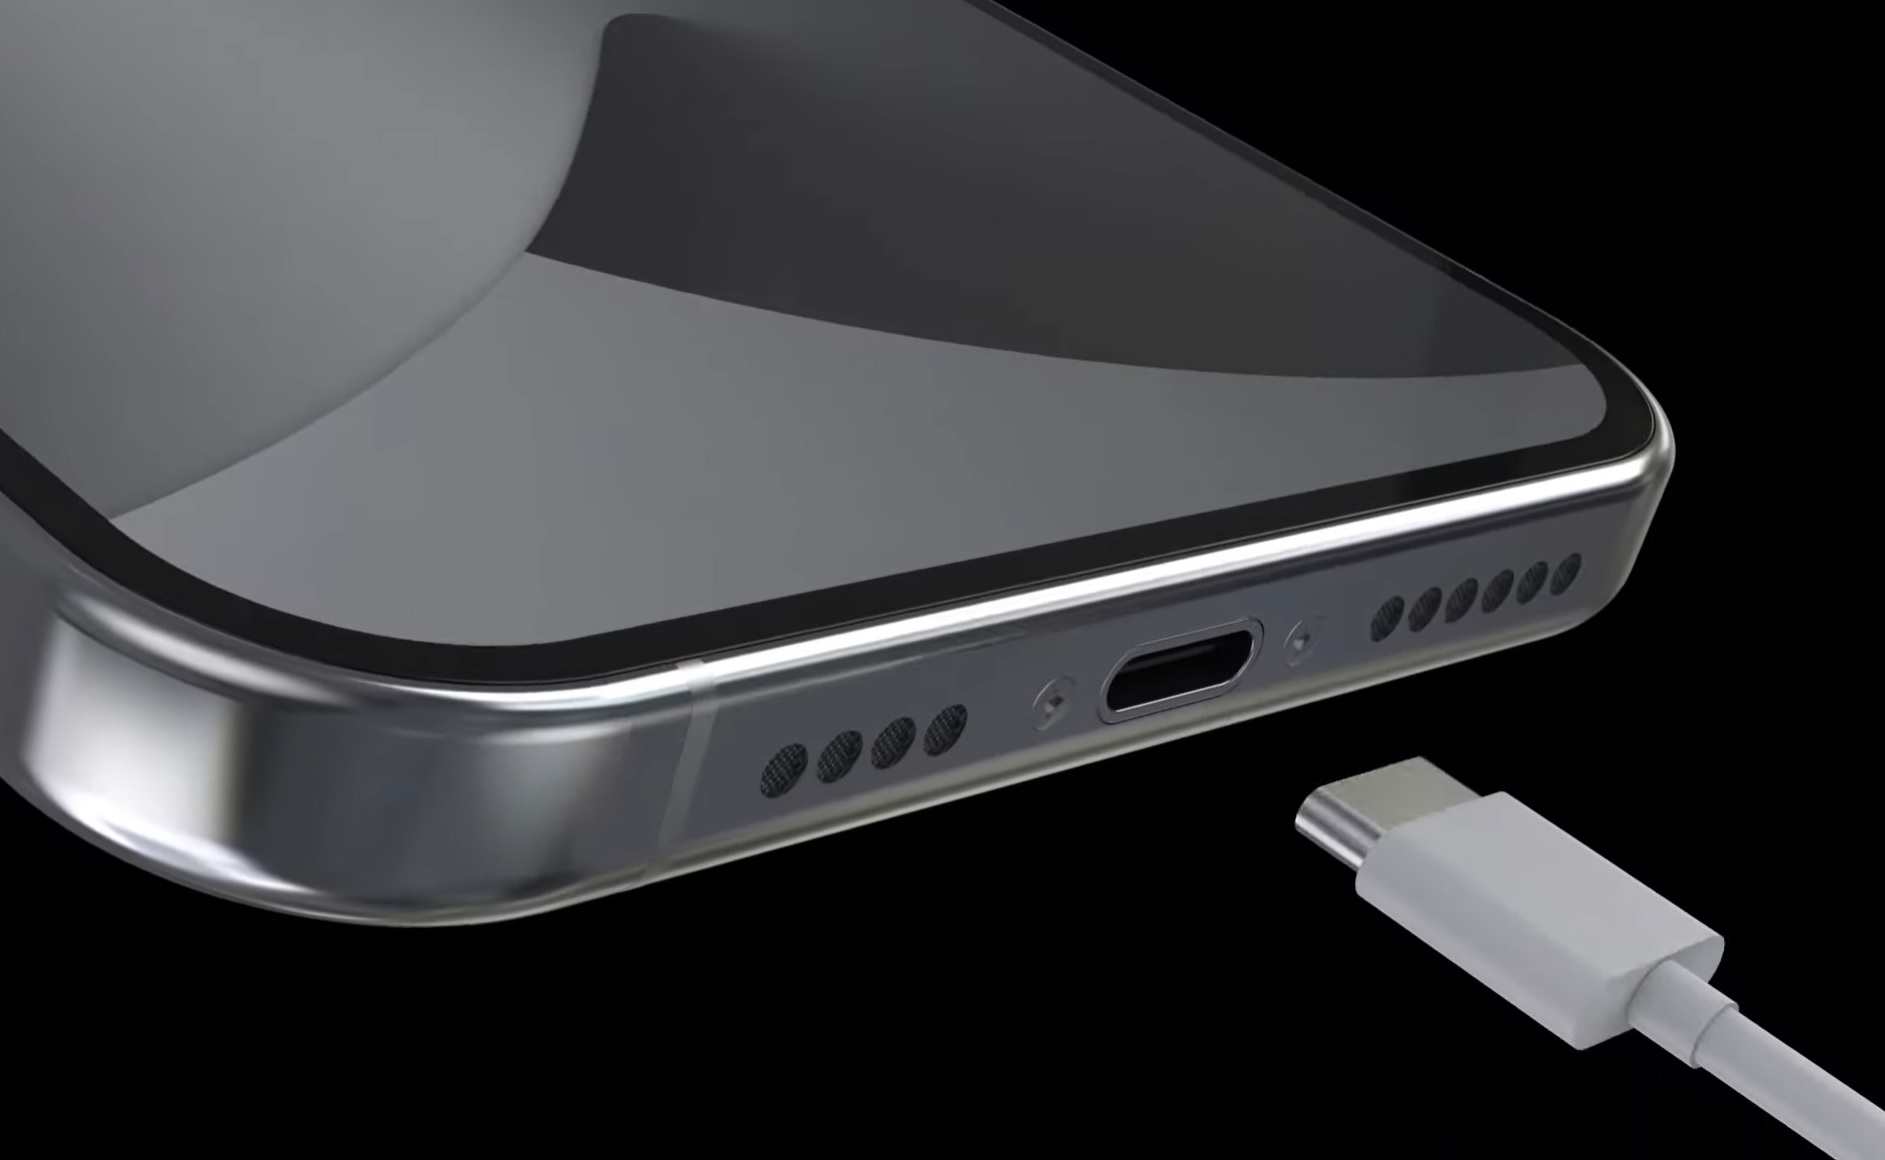 Apple lanza los iPhone 15 y iPhone 15 Pro, los primeros con puerto USB-C